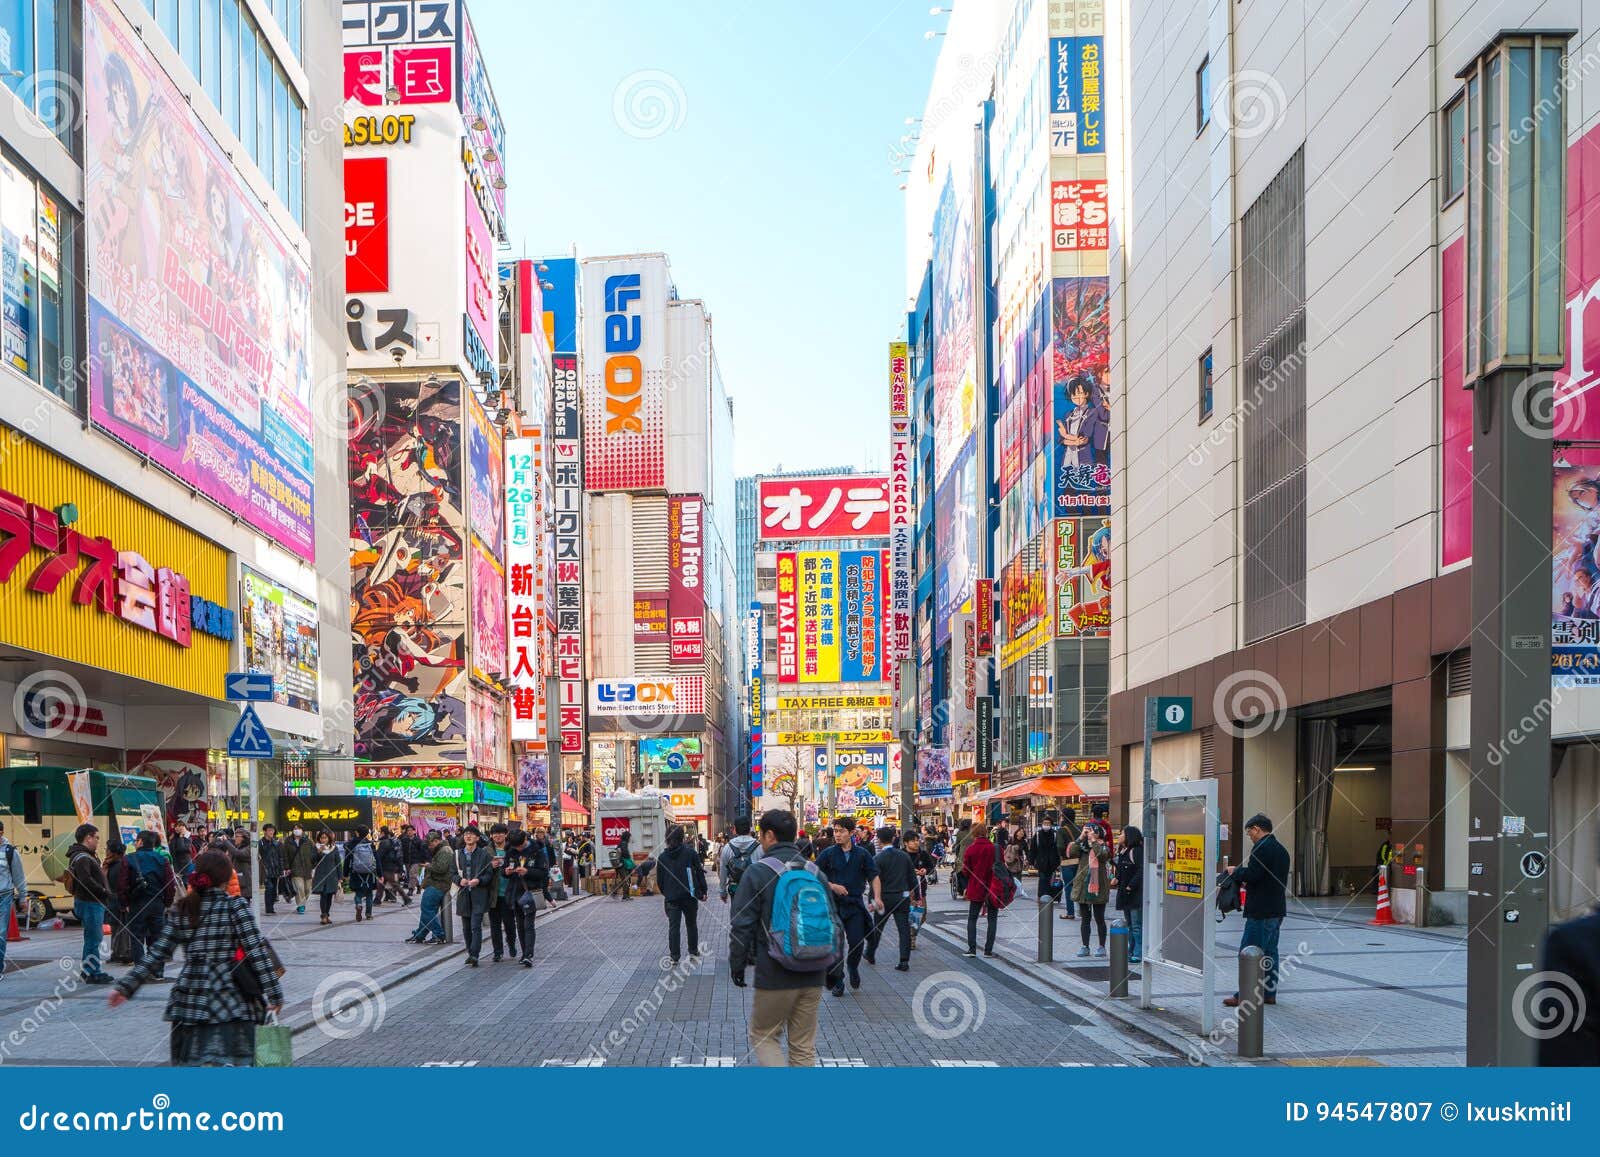 Anime streets at Akihabara | Trip.com Tokyo